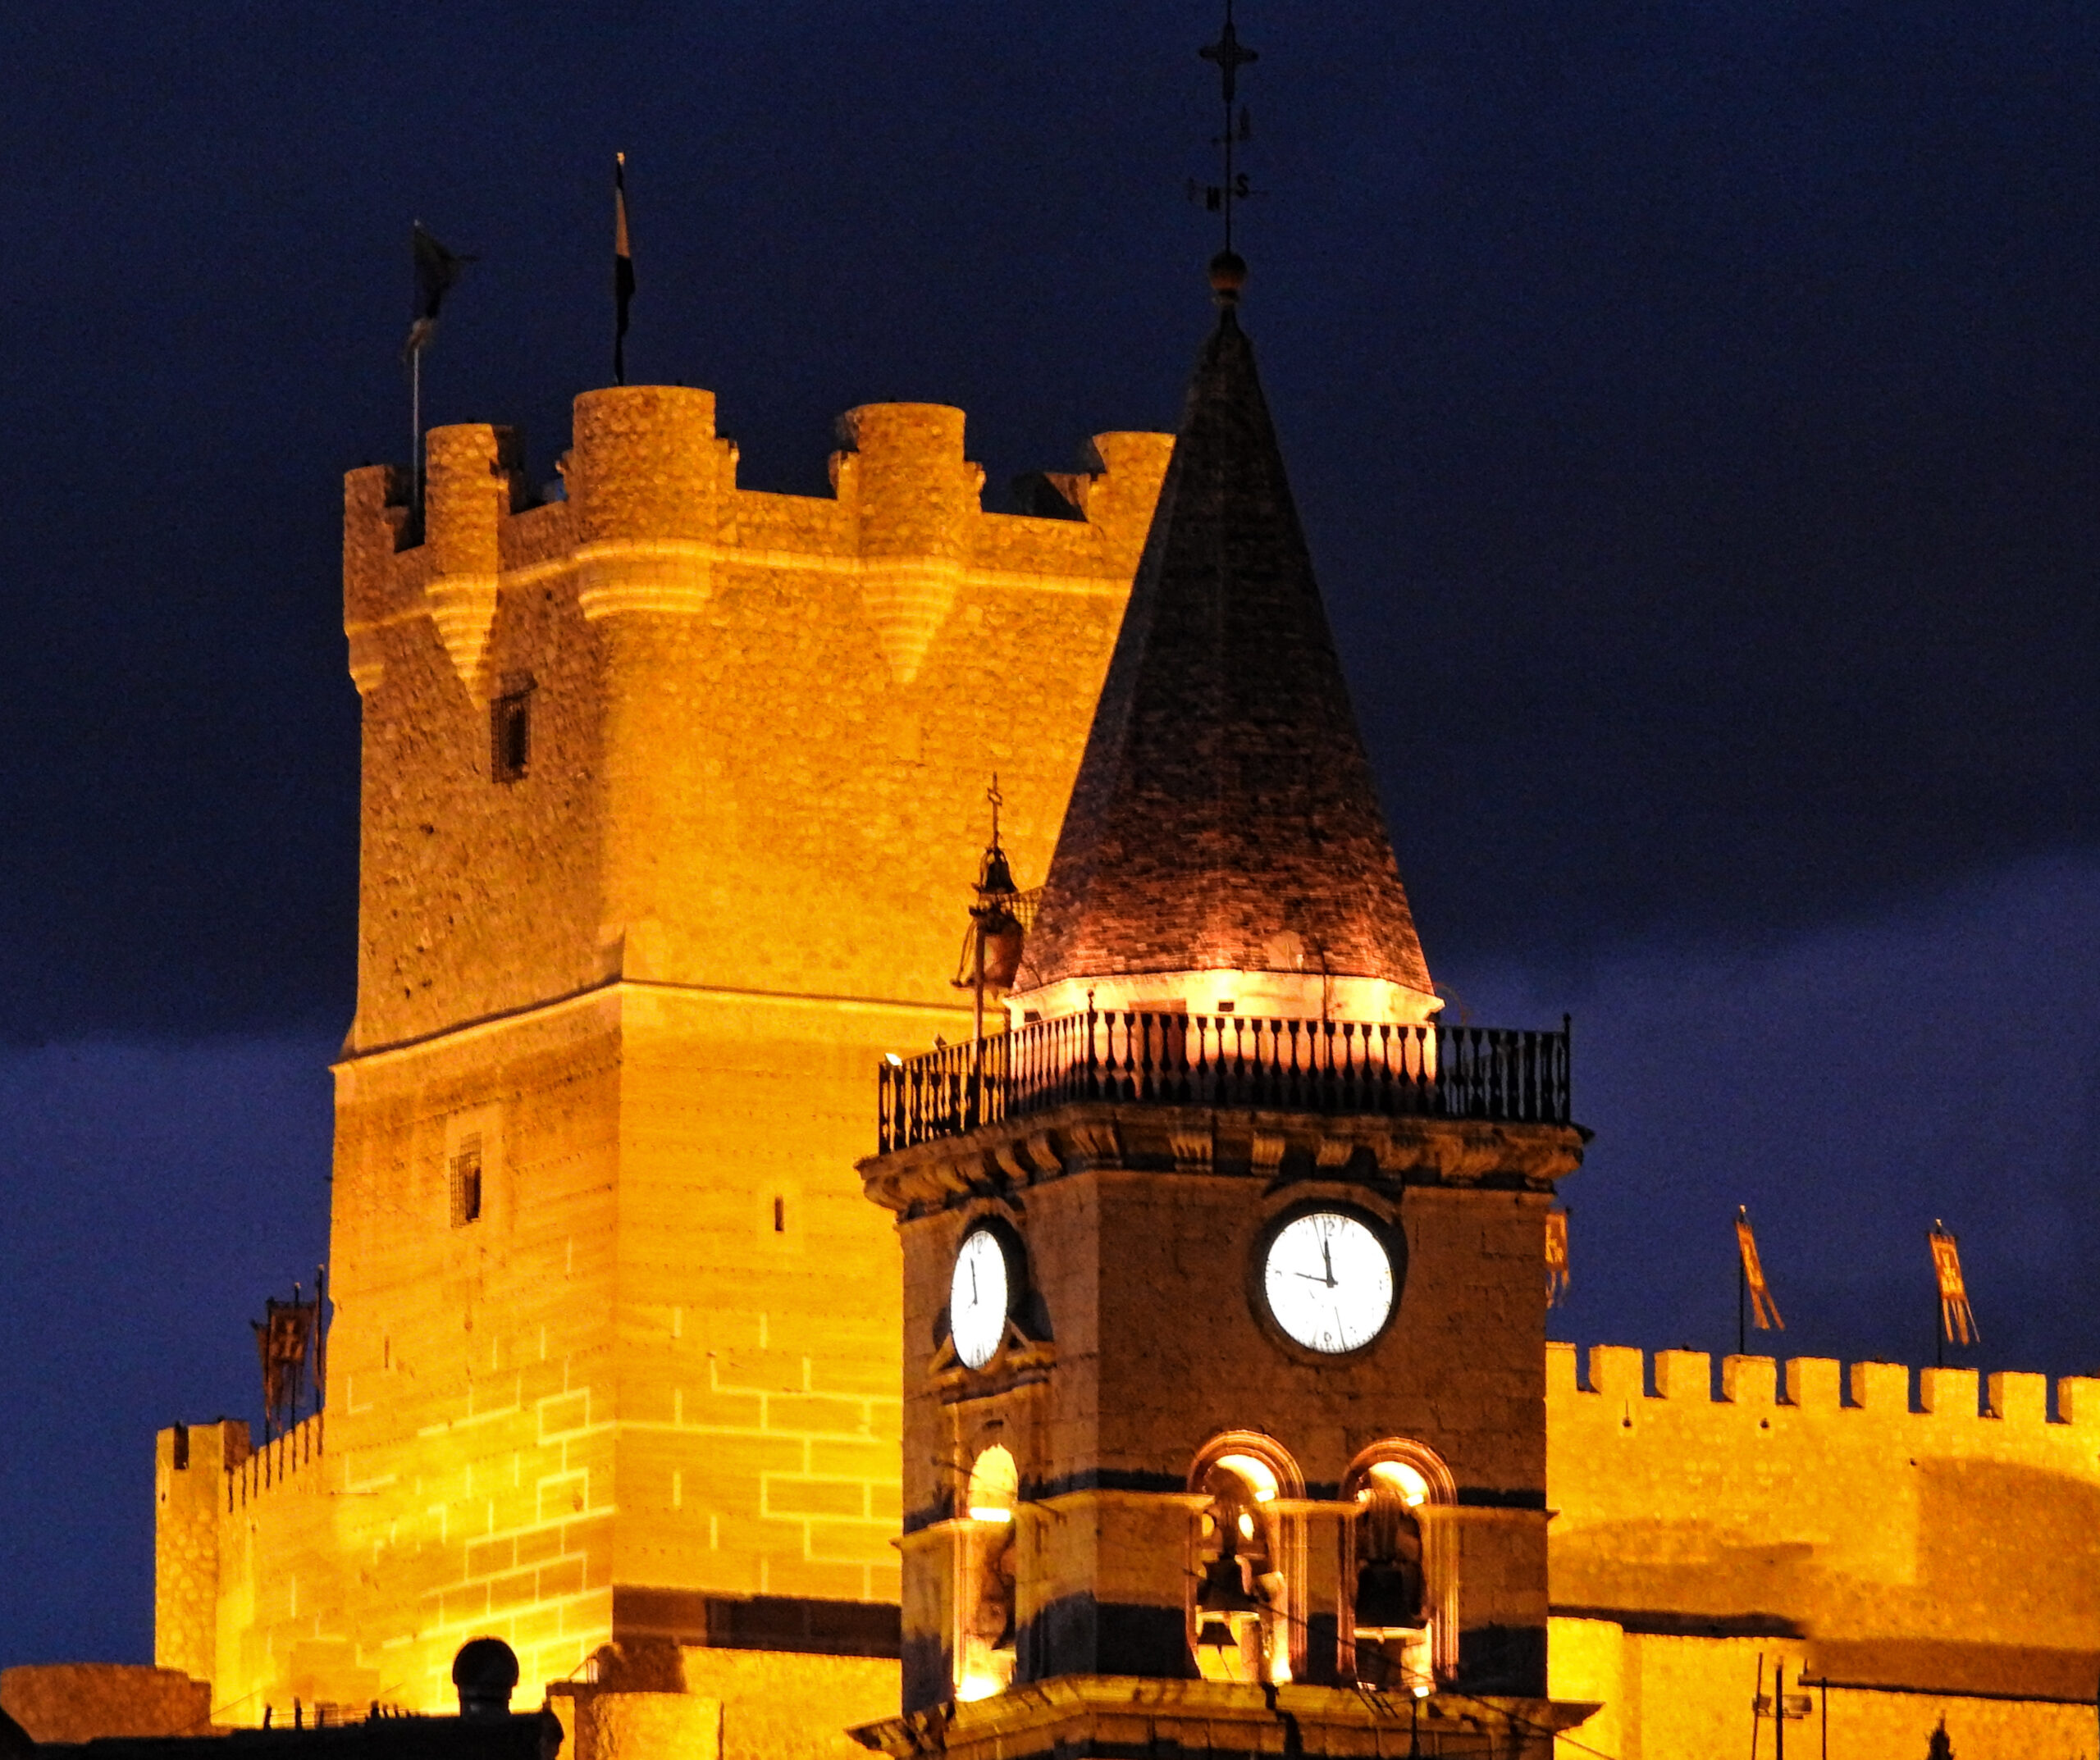 Vuelve la tradicional iluminación en la torre de la iglesia de Santa María